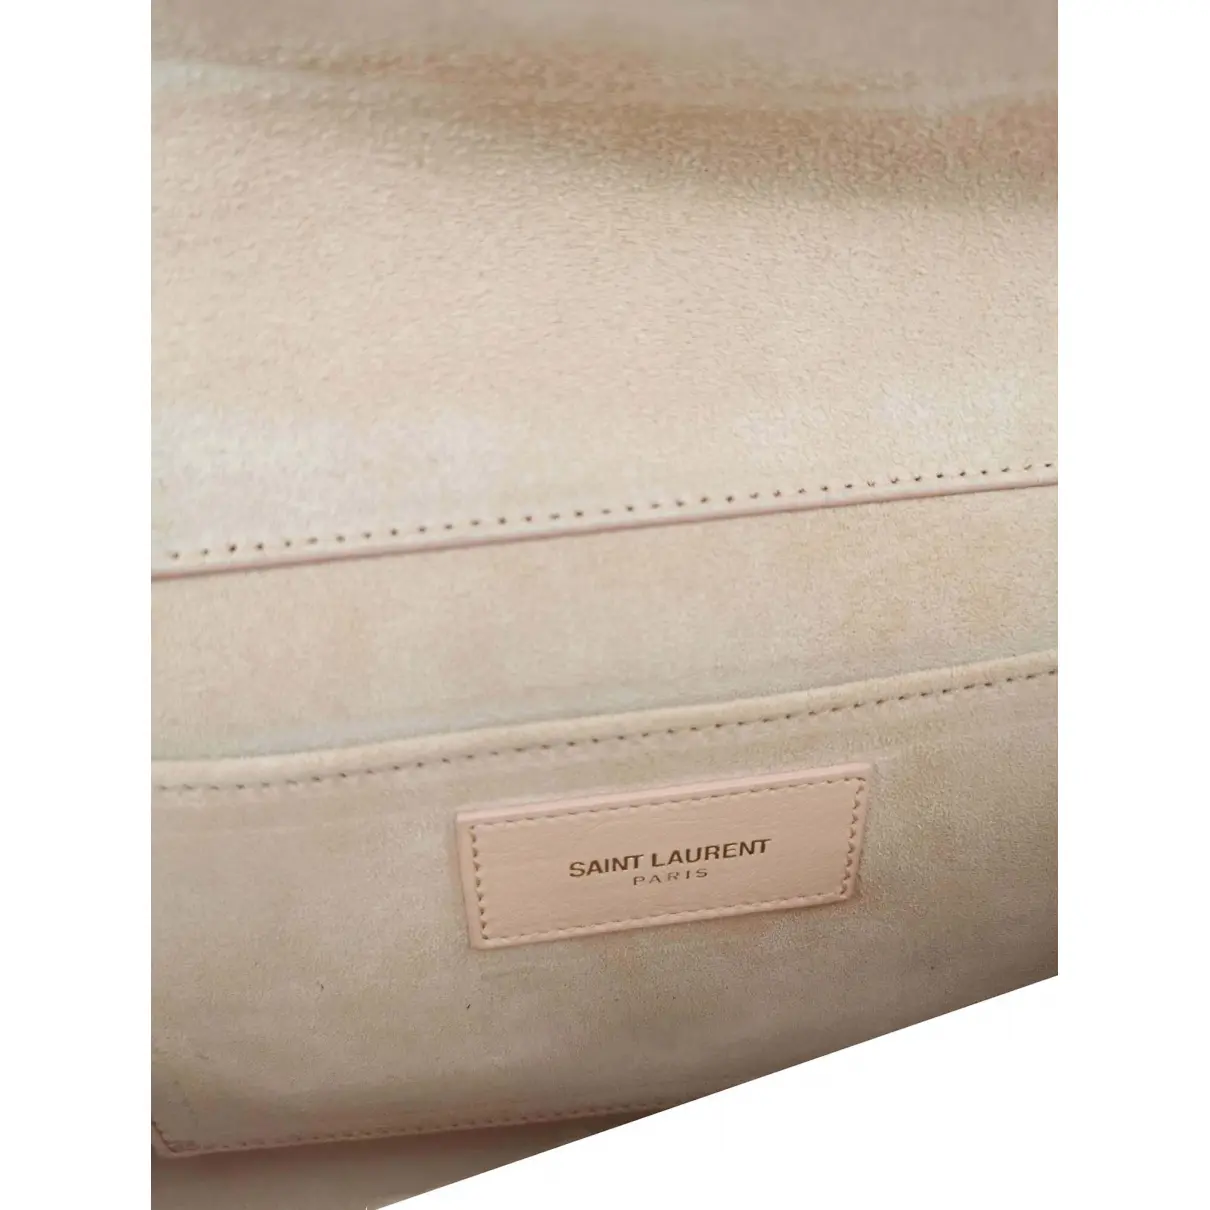 Chyc leather clutch bag Saint Laurent